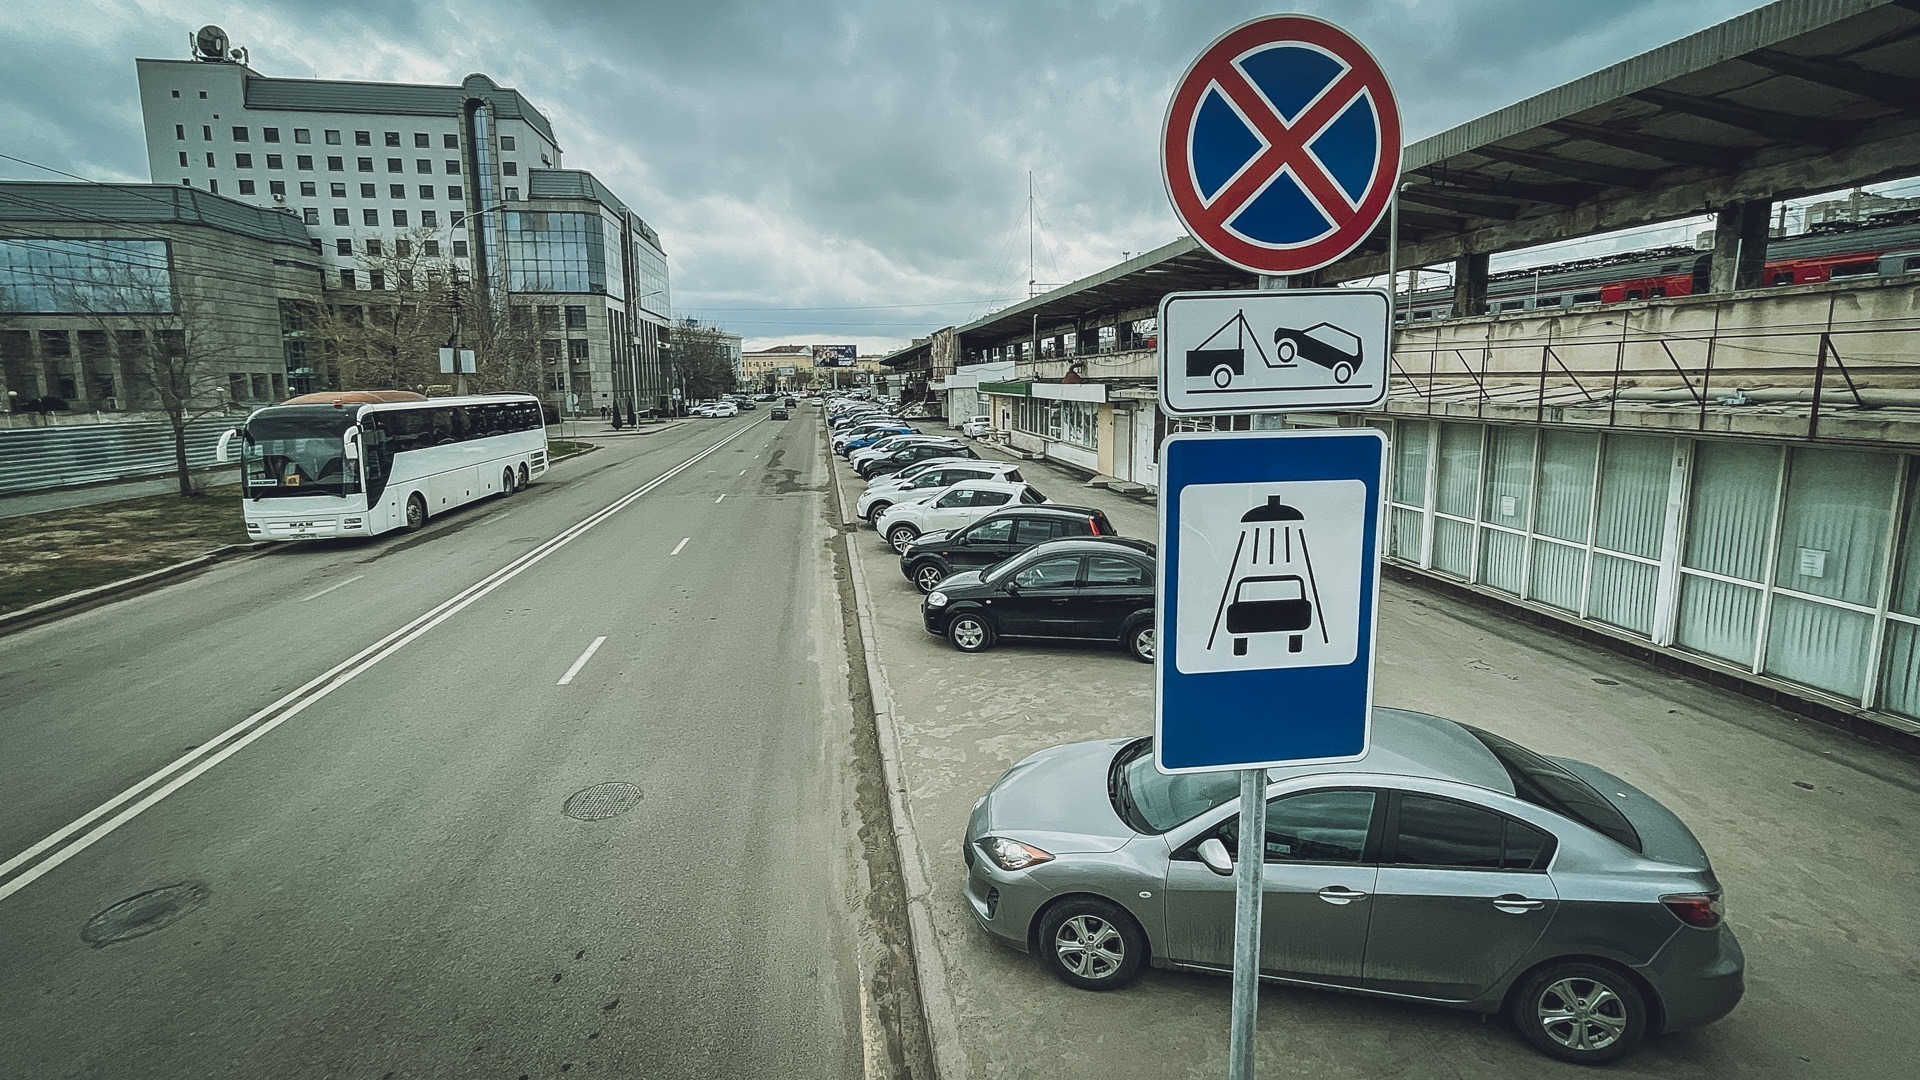 Базовая ставка за оплату парковочного места в Волгограде составит 100 руб/час